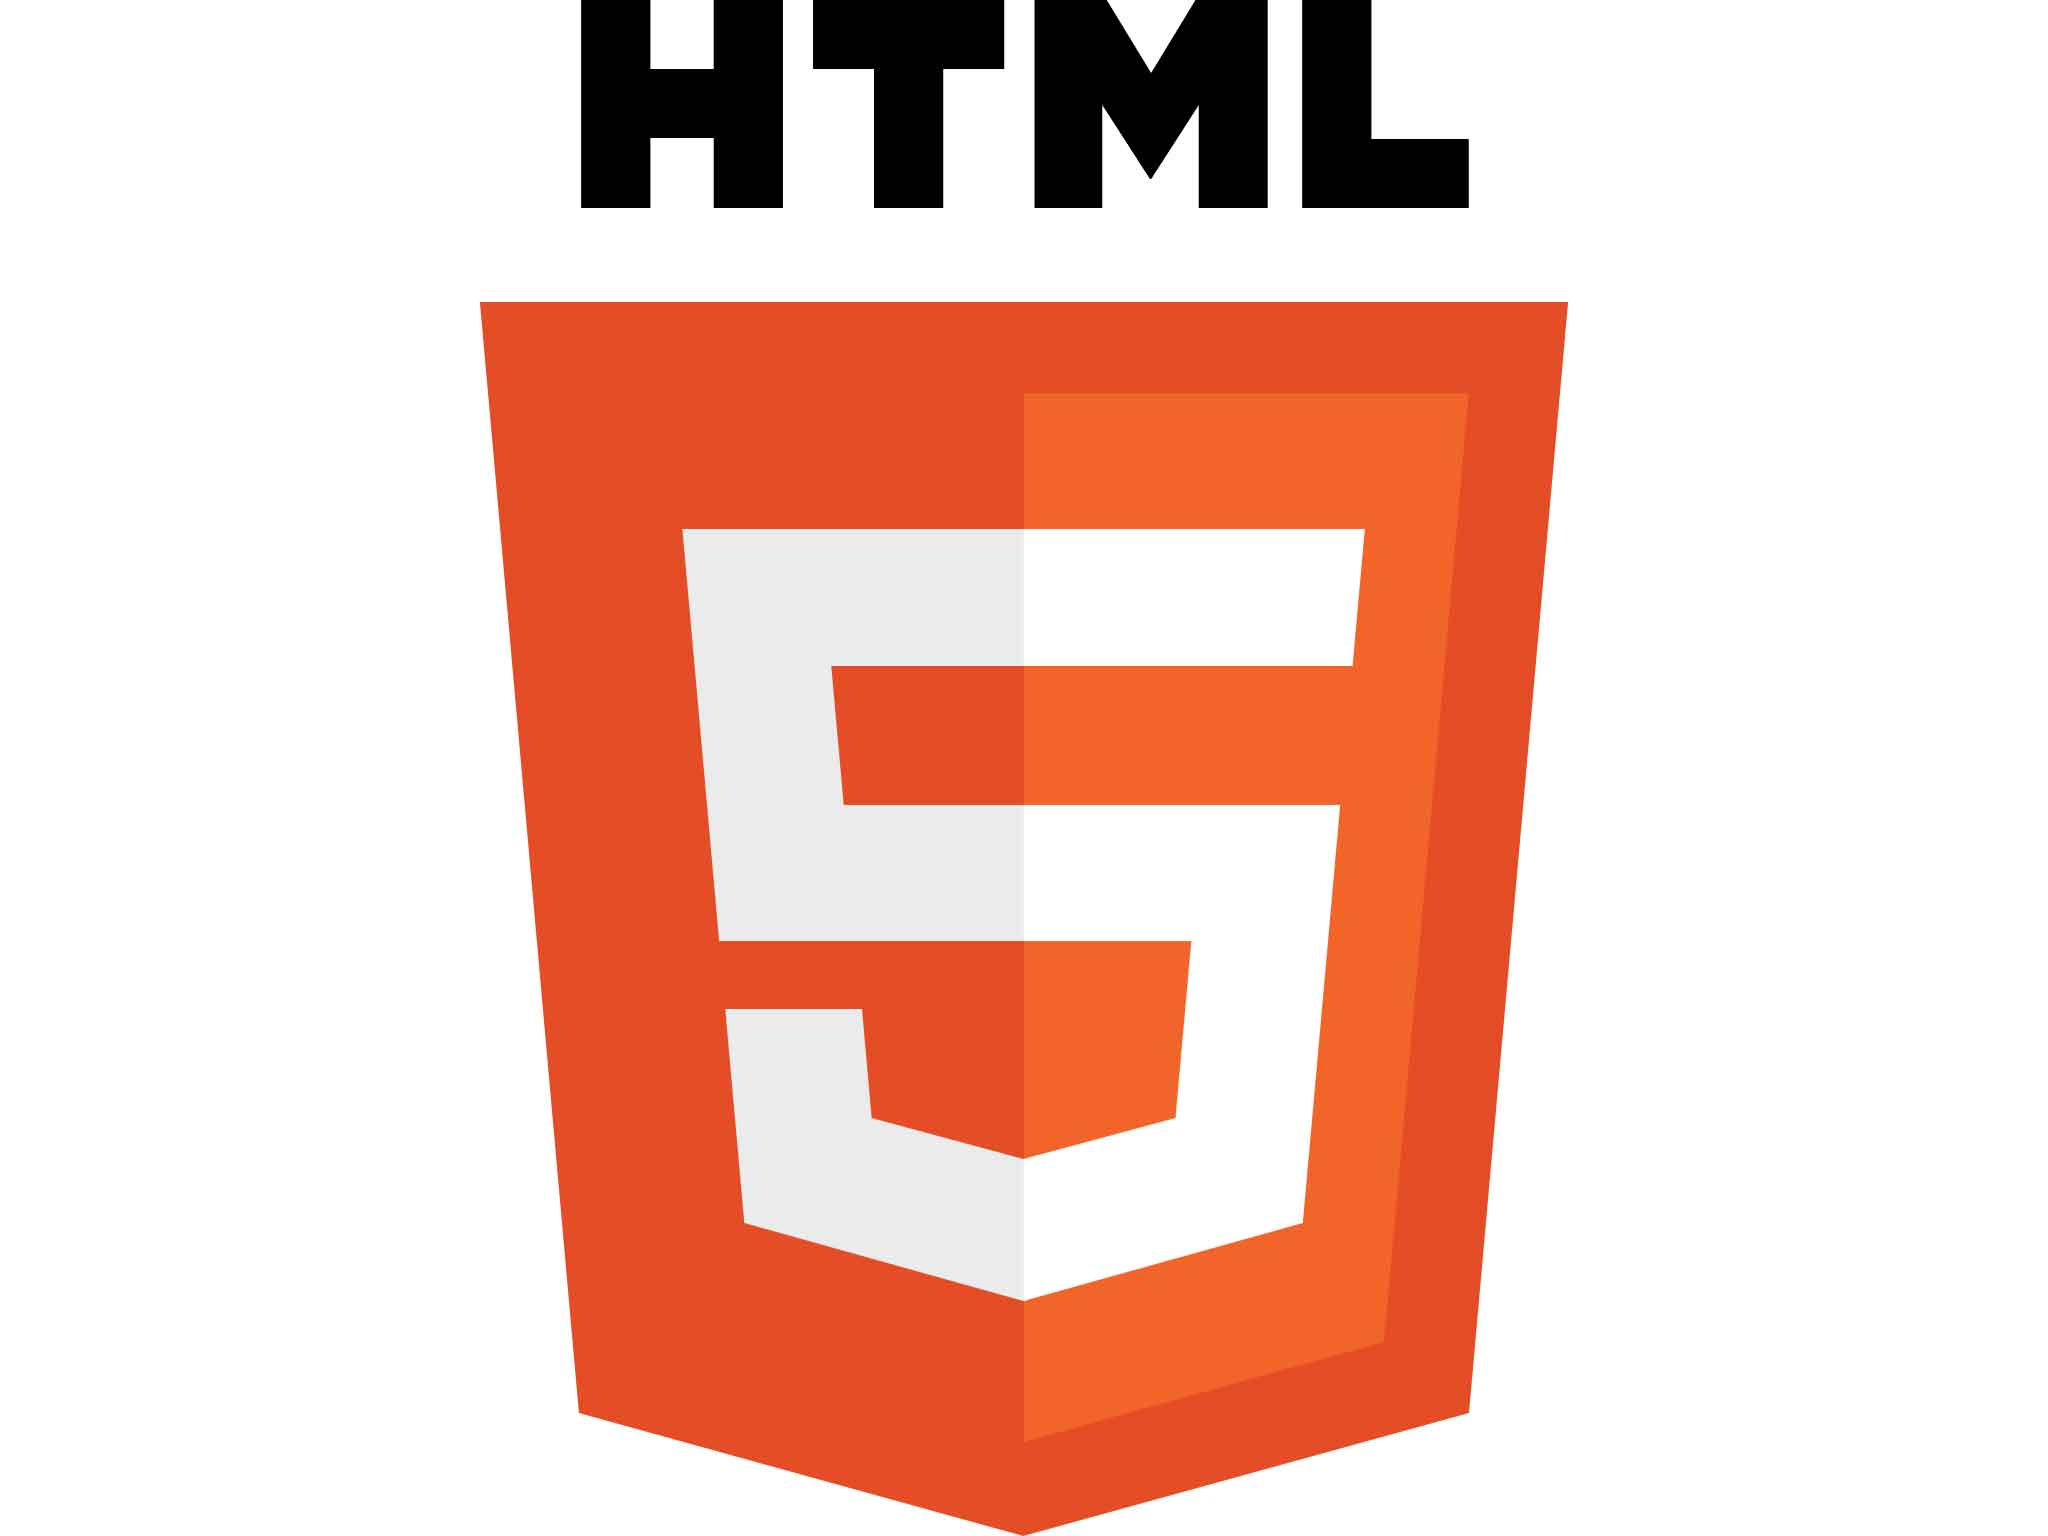 Desenvolvimento de jogos com HTML5 e javascript